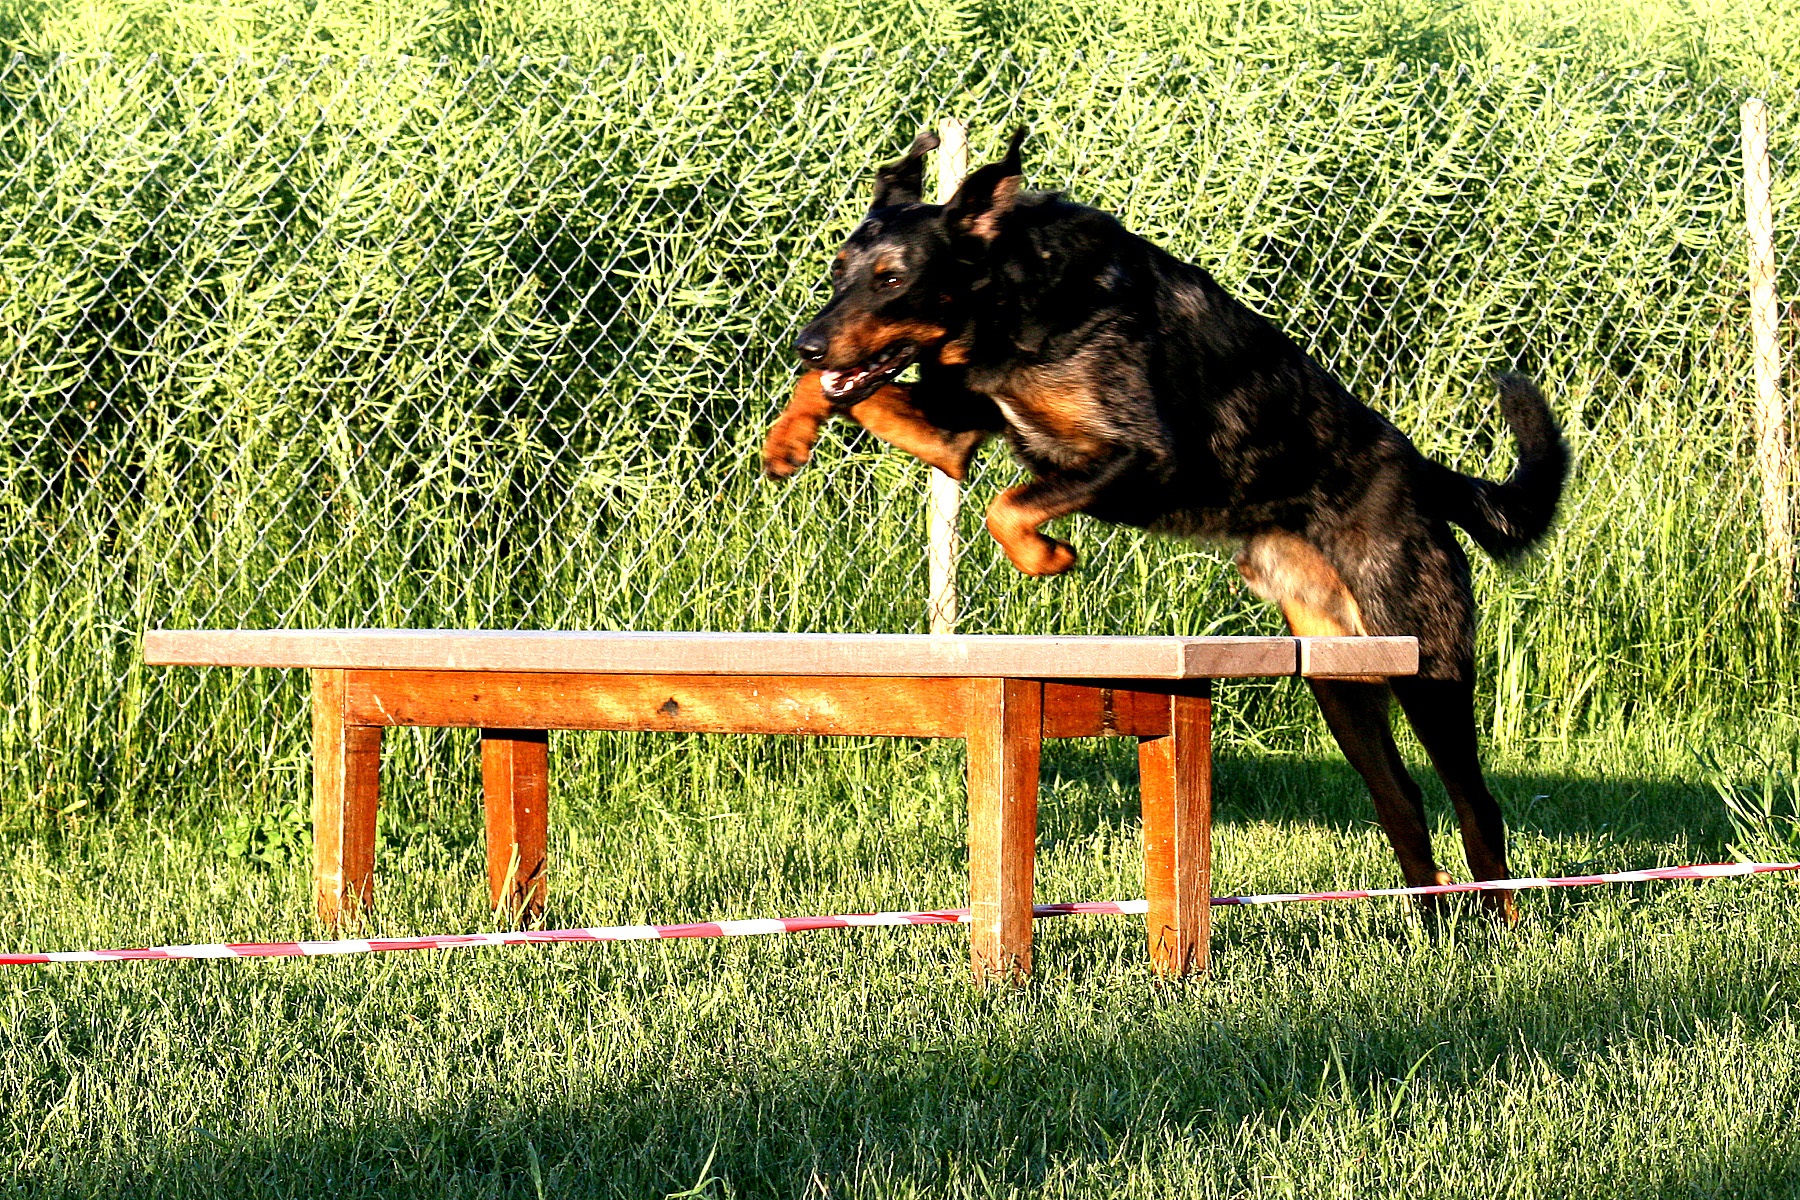 sporthund, Hundesport mit dem Beauceron ist mehr als ein Geländelauf (Cani-Cross). Hundesport ist viel mehr als das Bike vom Beauceron ziehen zu lassen (Velo-Jöring). Auch für Wagenrennen (DOg Cart) sind Beaucerons nicht gezüchtet worden. Es sind Schäfer- und Hütehunde und sollten in den für diesen Hundeberuf wichtigen Eigenschaften gefördert werden.